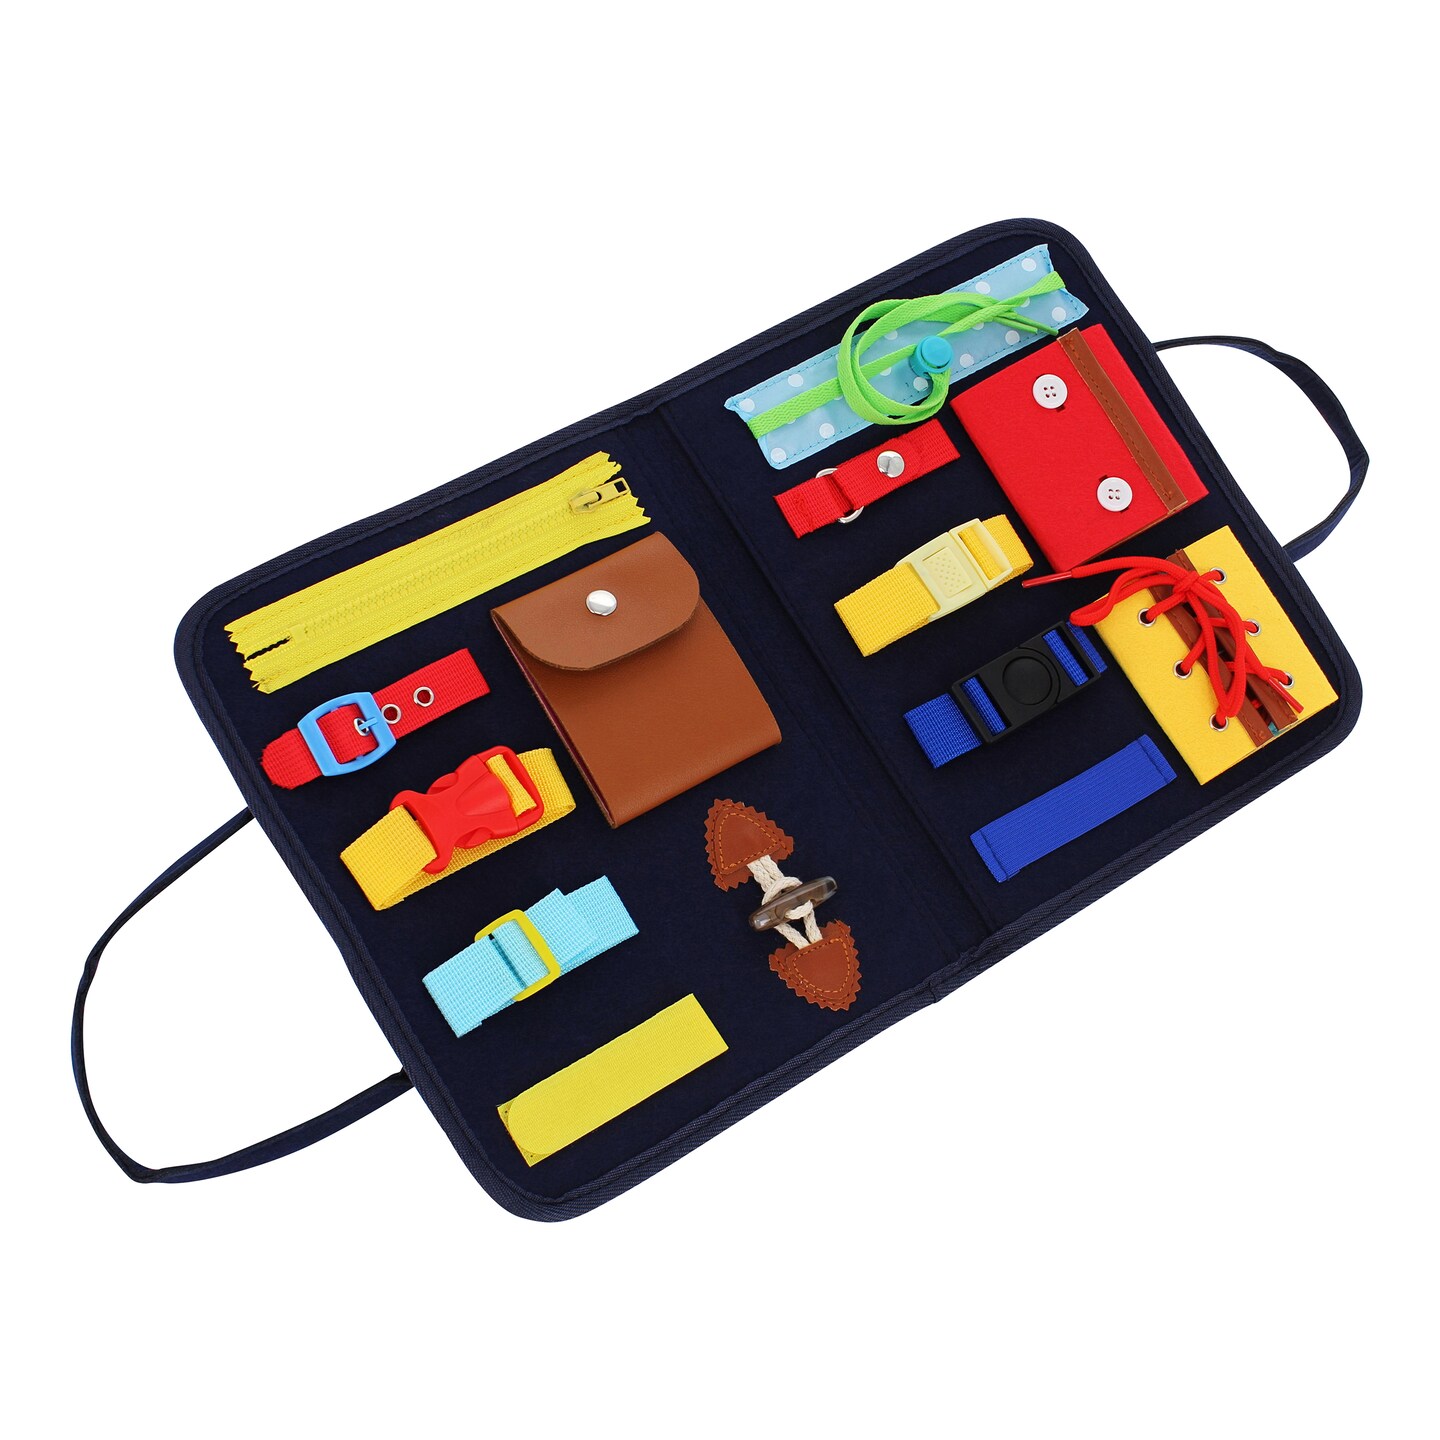 Acorn Baby Busy Activity Board - Educational Travel Activity Sensory Board Toy